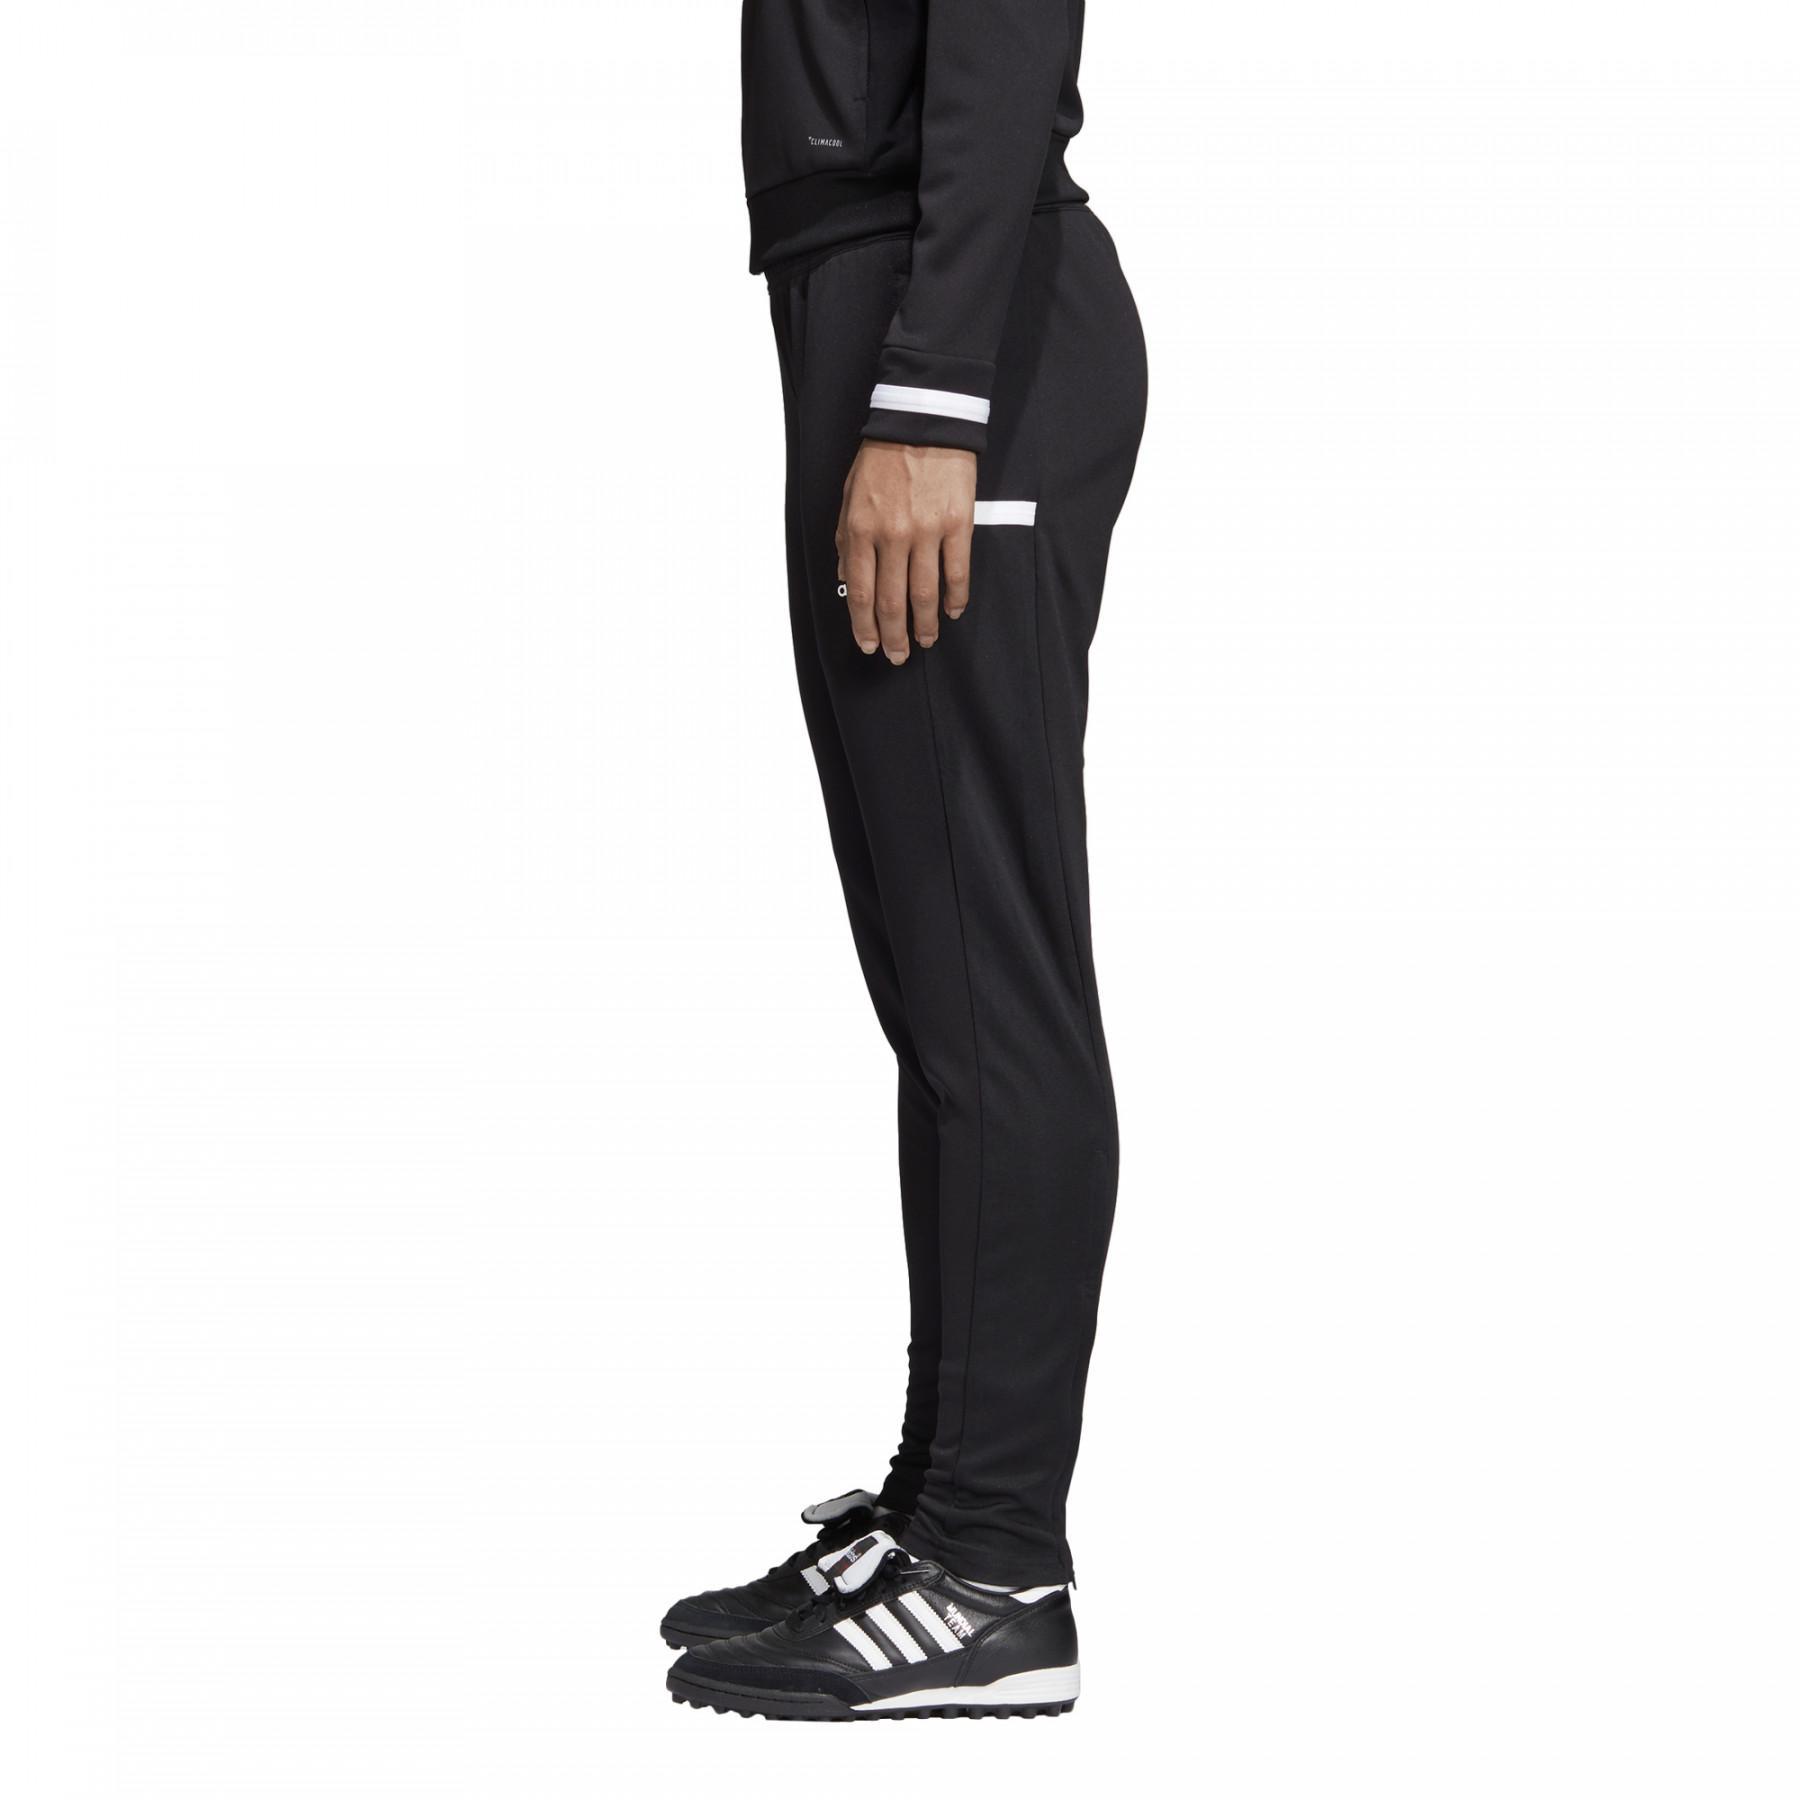 Pantalon de survêtement femme adidas Team 19